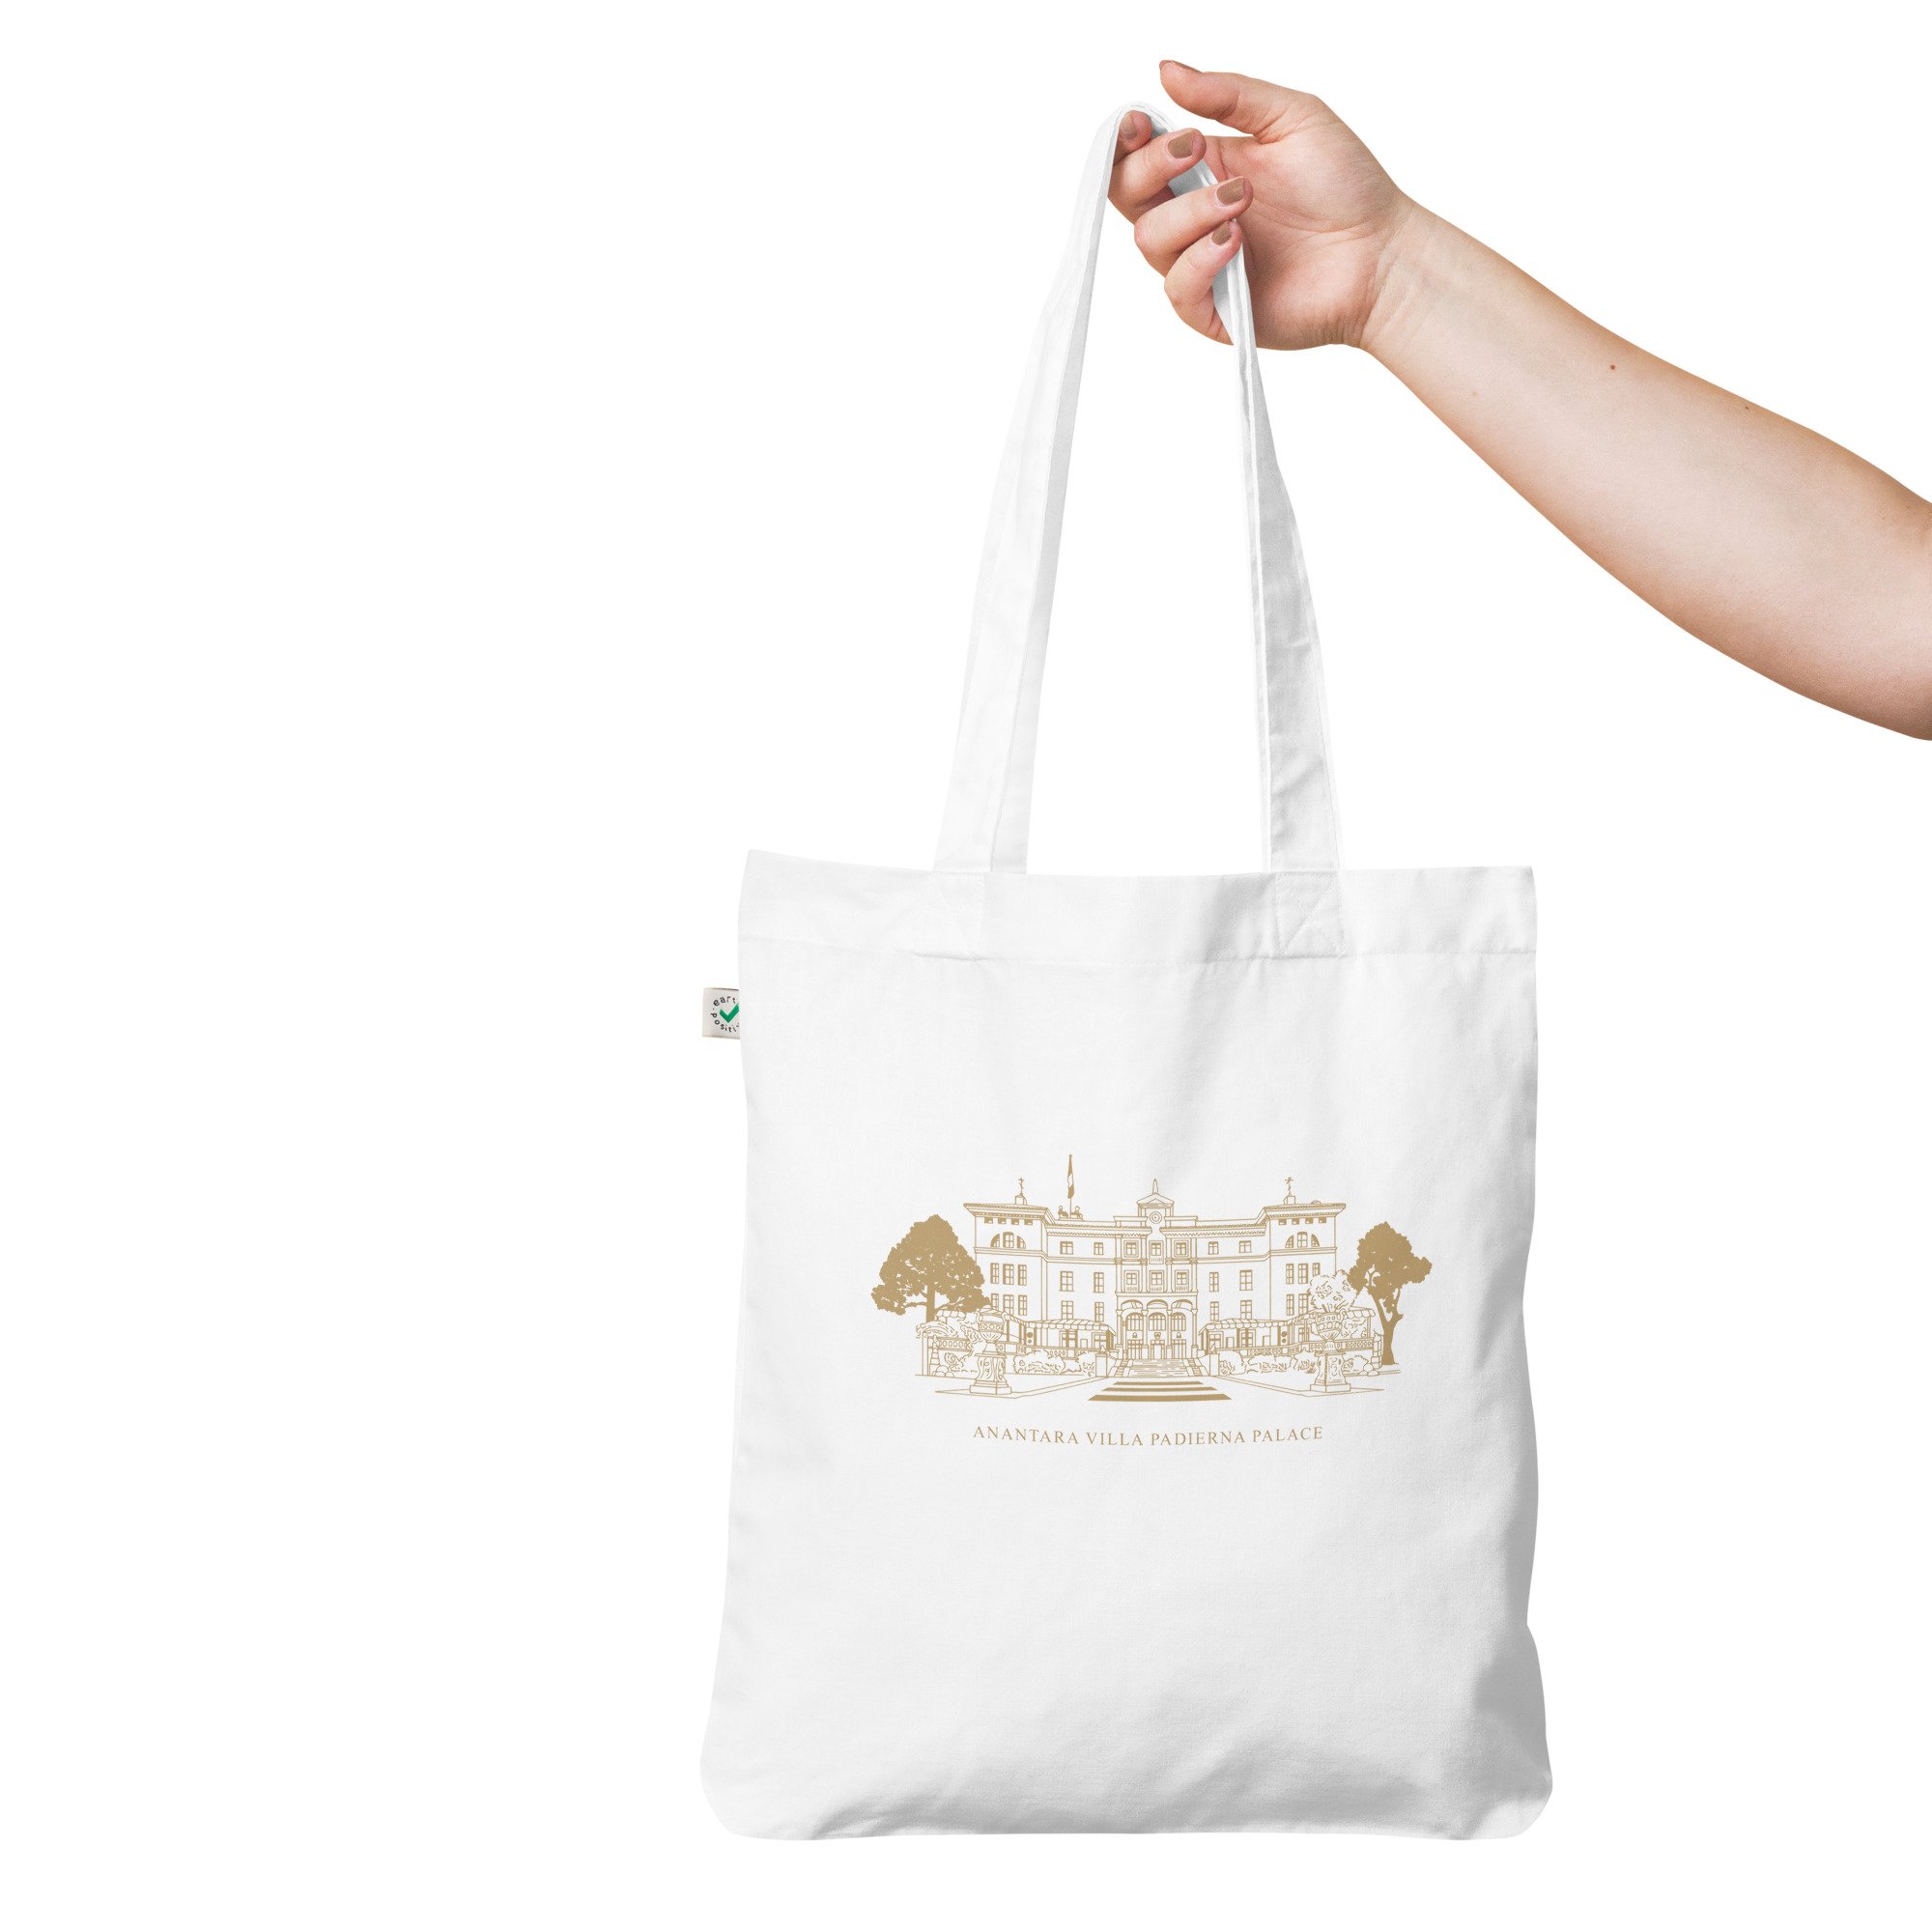 Anantara Villa Padierna Palace wedding tote bag — LETTERING BY GRG